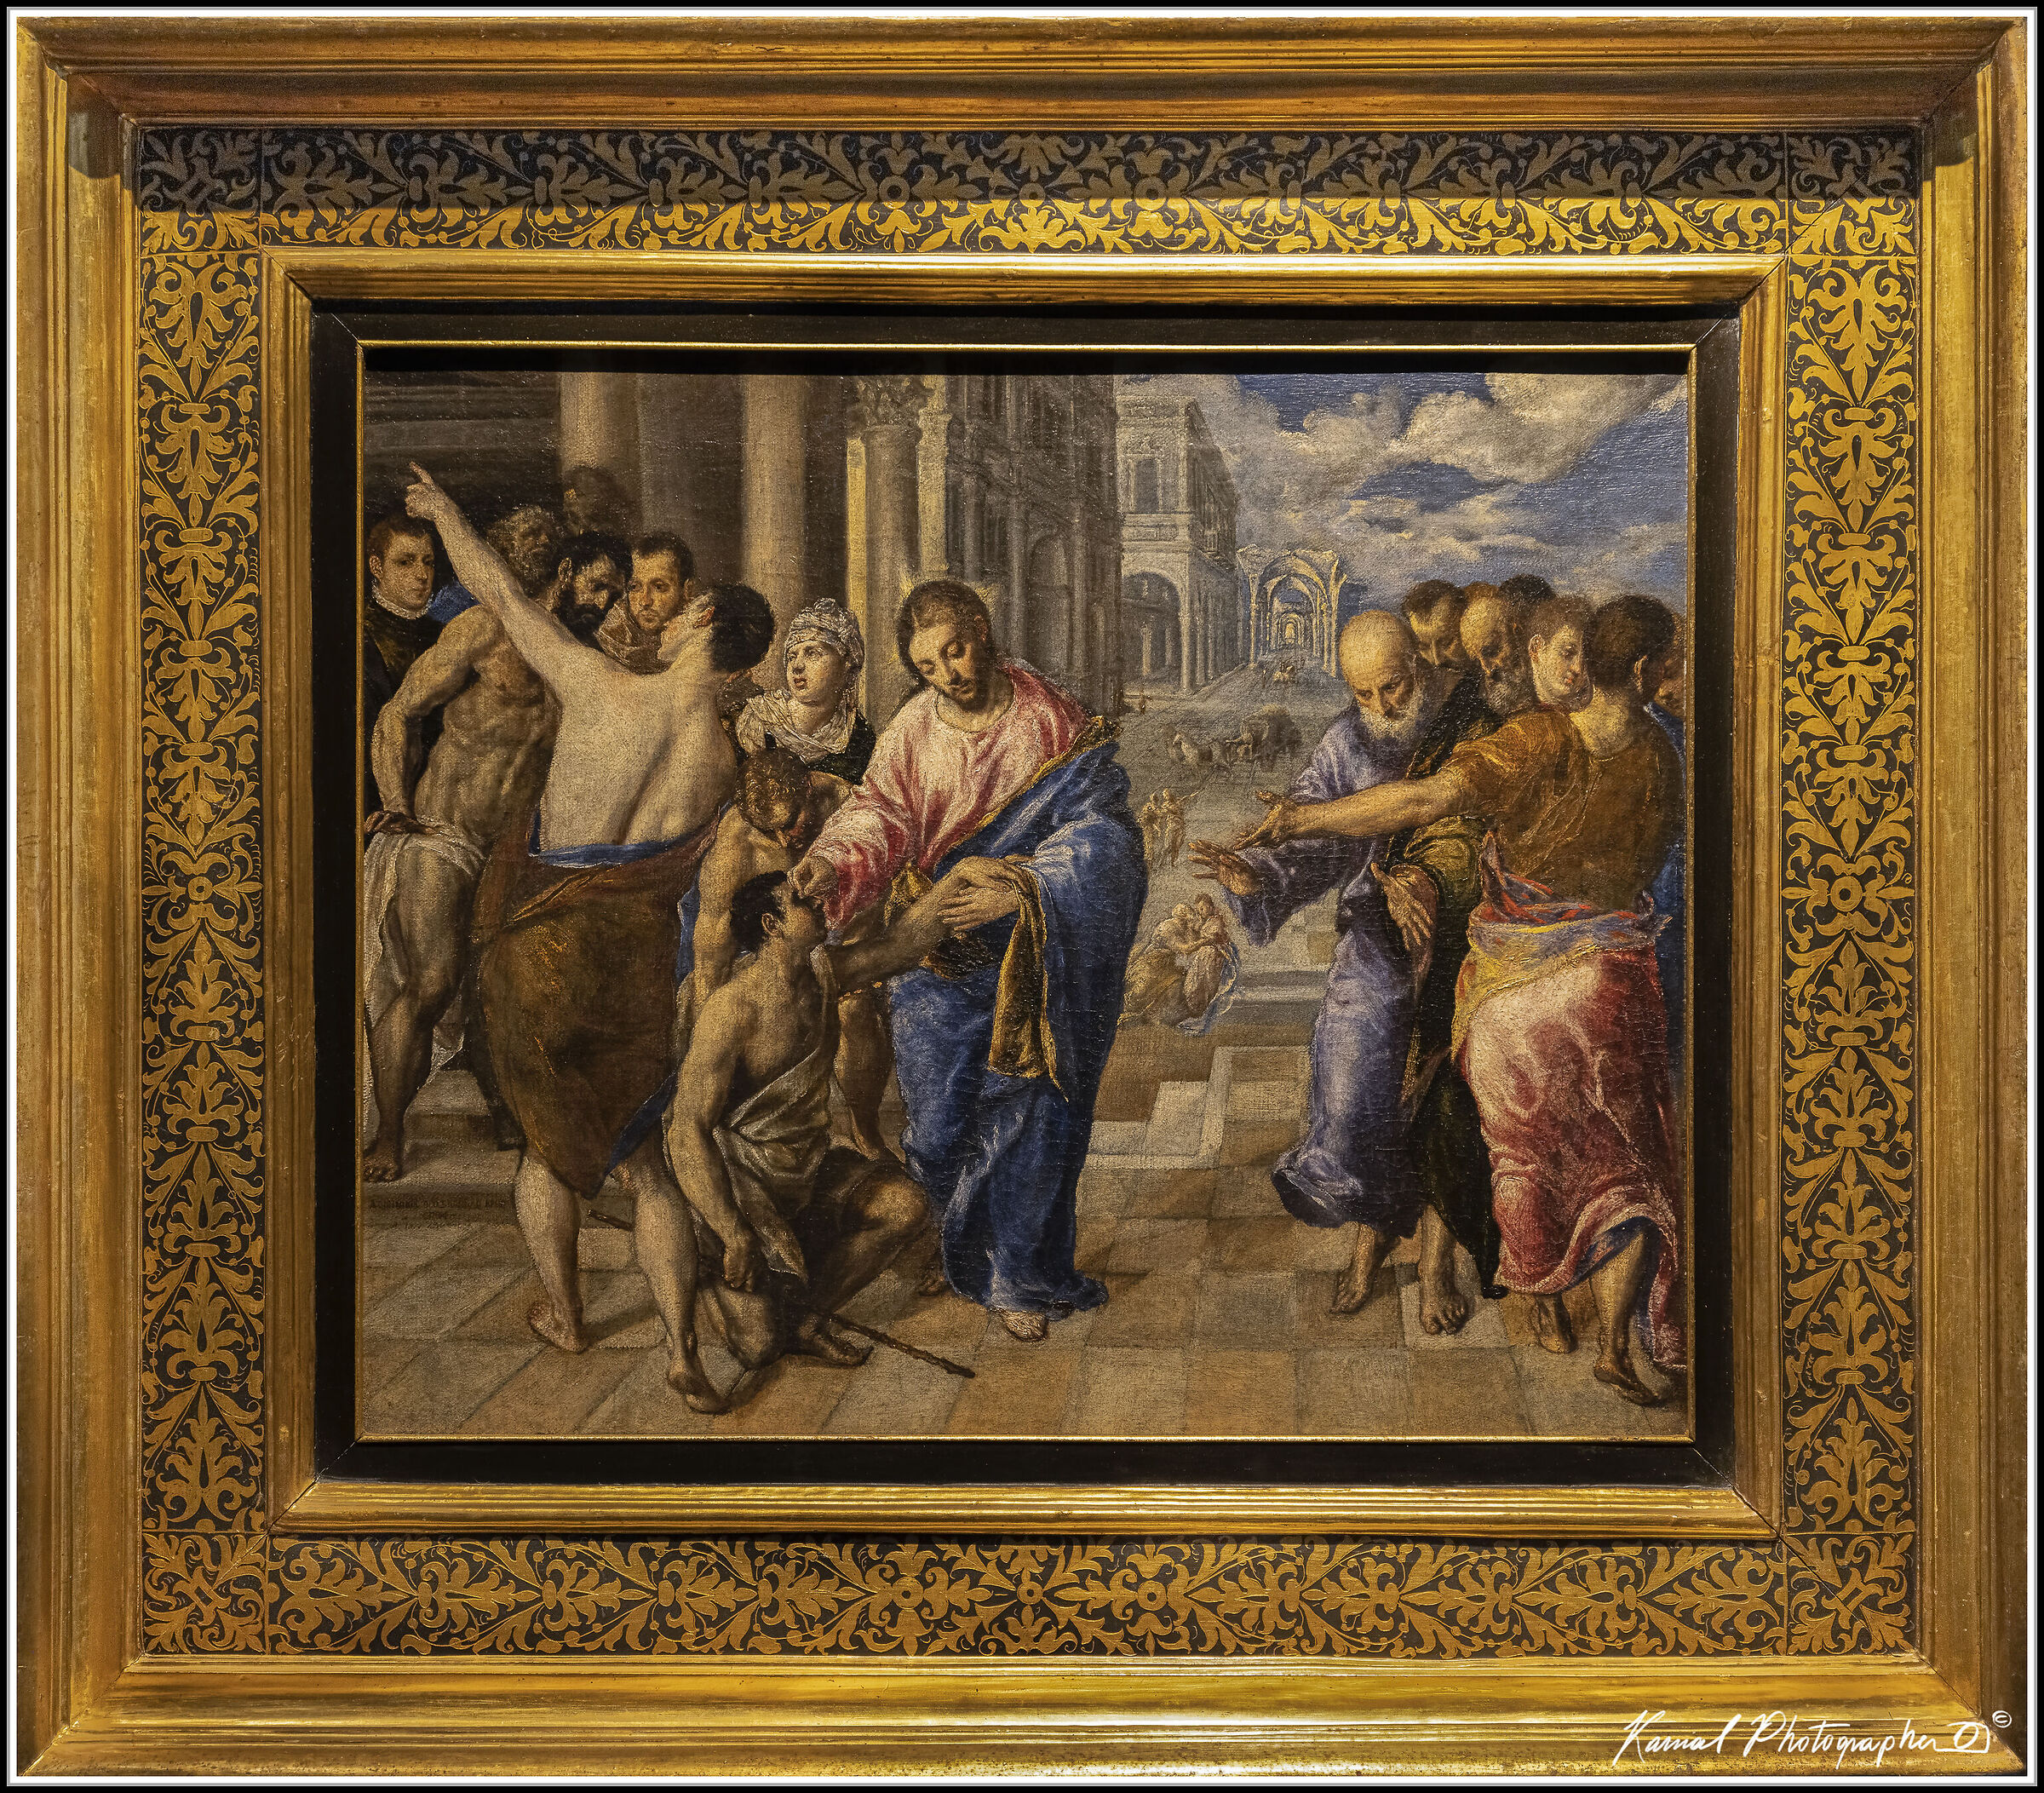  Domenico Theotokopoulos known as El Greco...